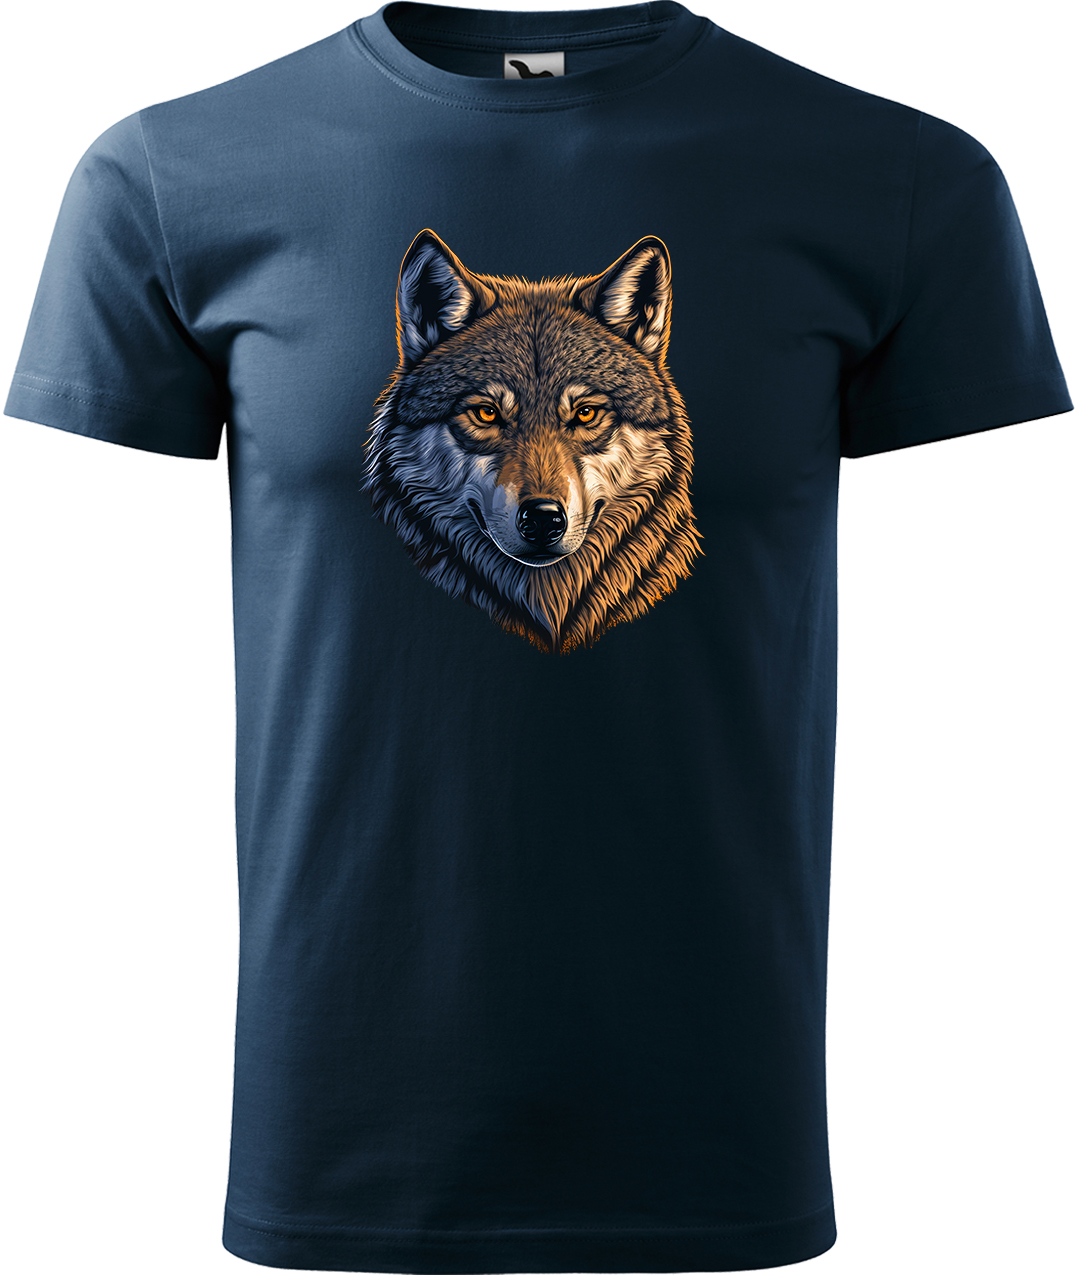 Pánské tričko s vlkem - Hlava vlka Velikost: L, Barva: Námořní modrá (02), Střih: pánský